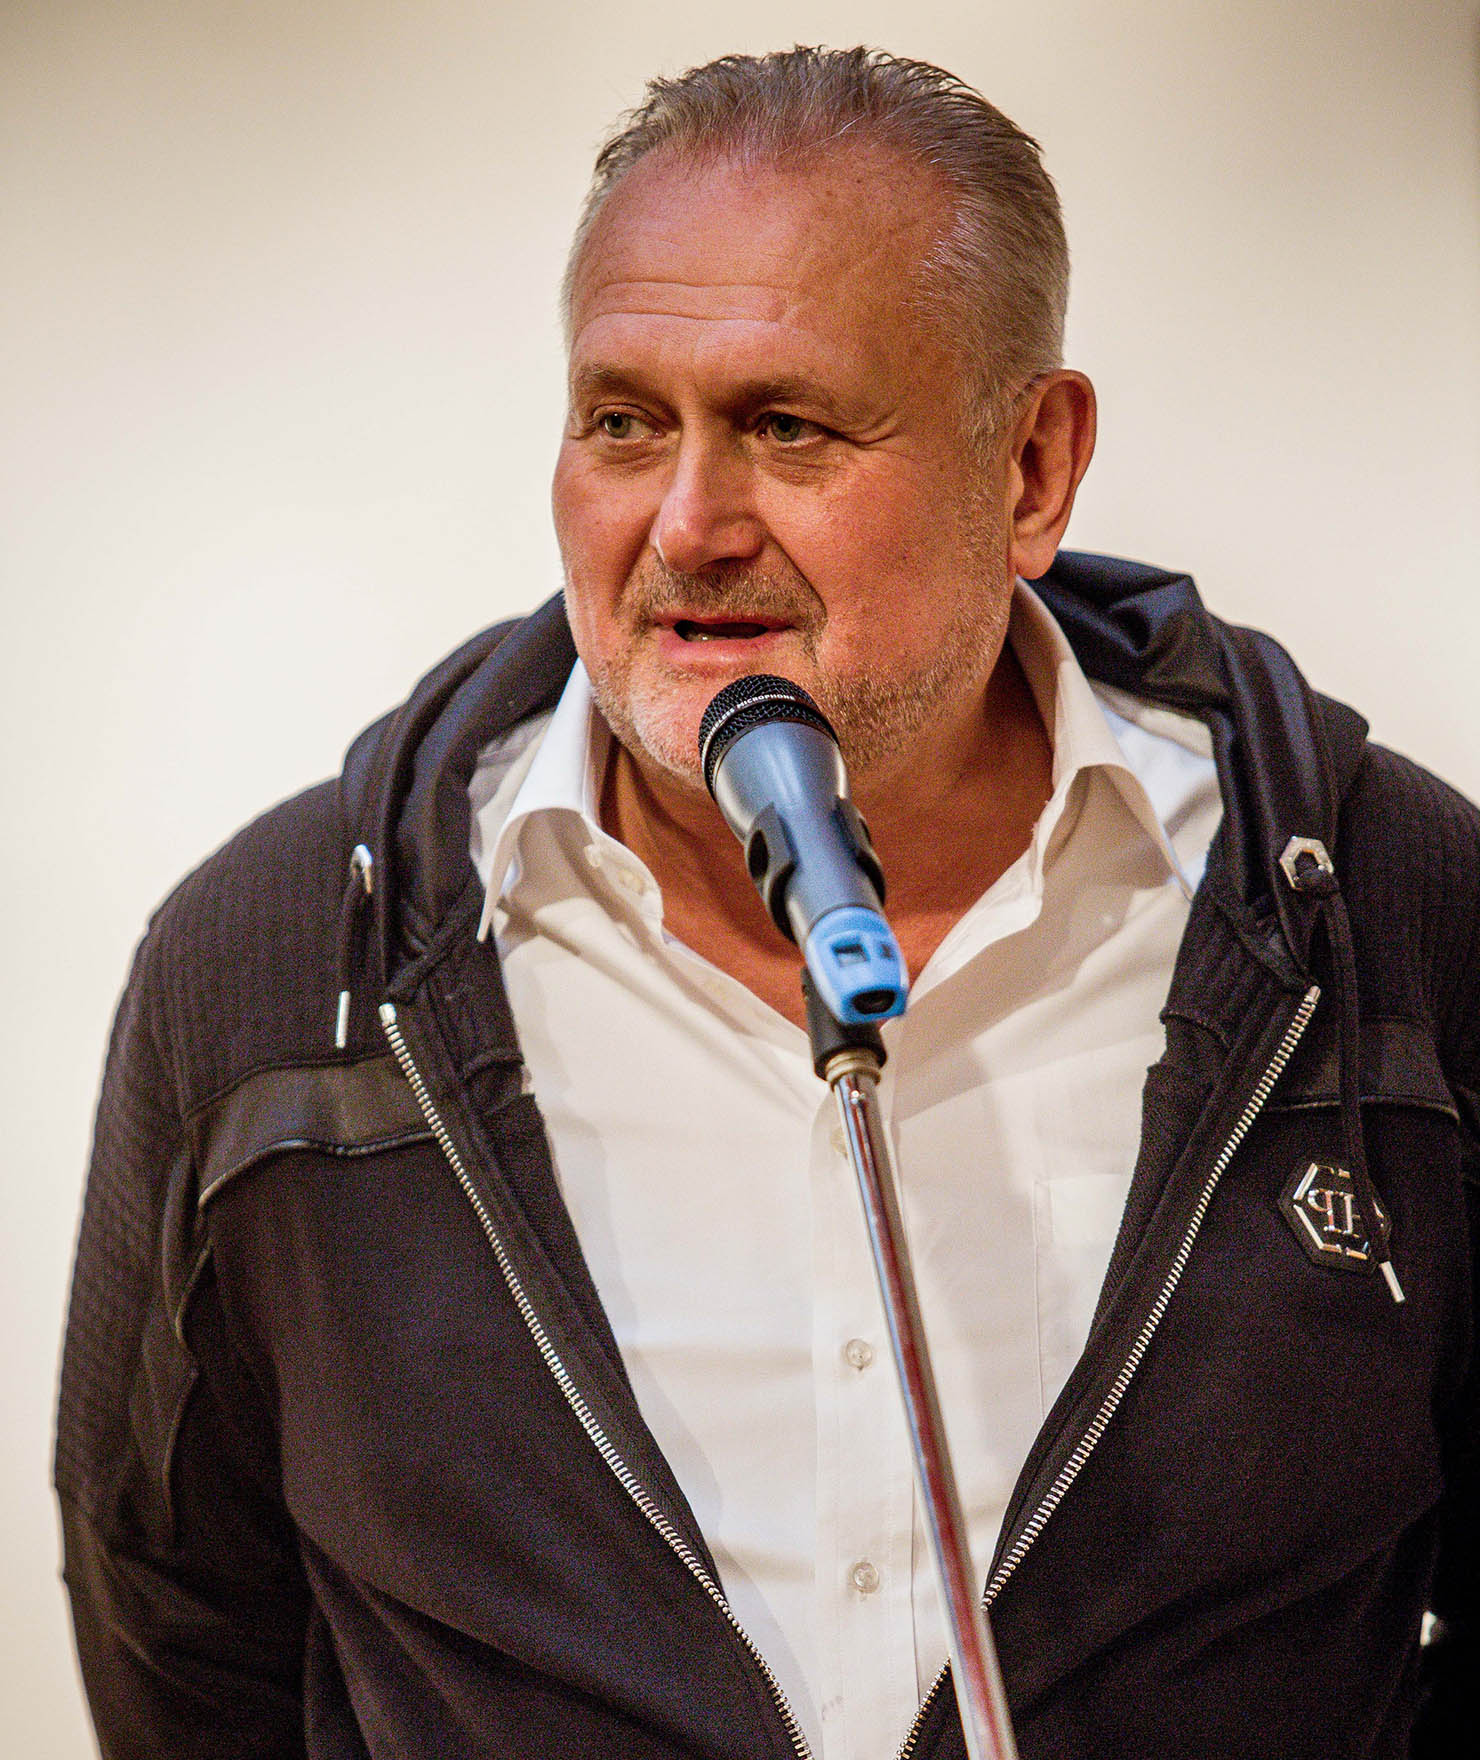 Zdjęcie. Postawny mężczyzna w białej koszuli i ciemnej bluzie z siwymi włosami i zakolami mówi do mikrofonu. To malarz Paweł Kowalewski.